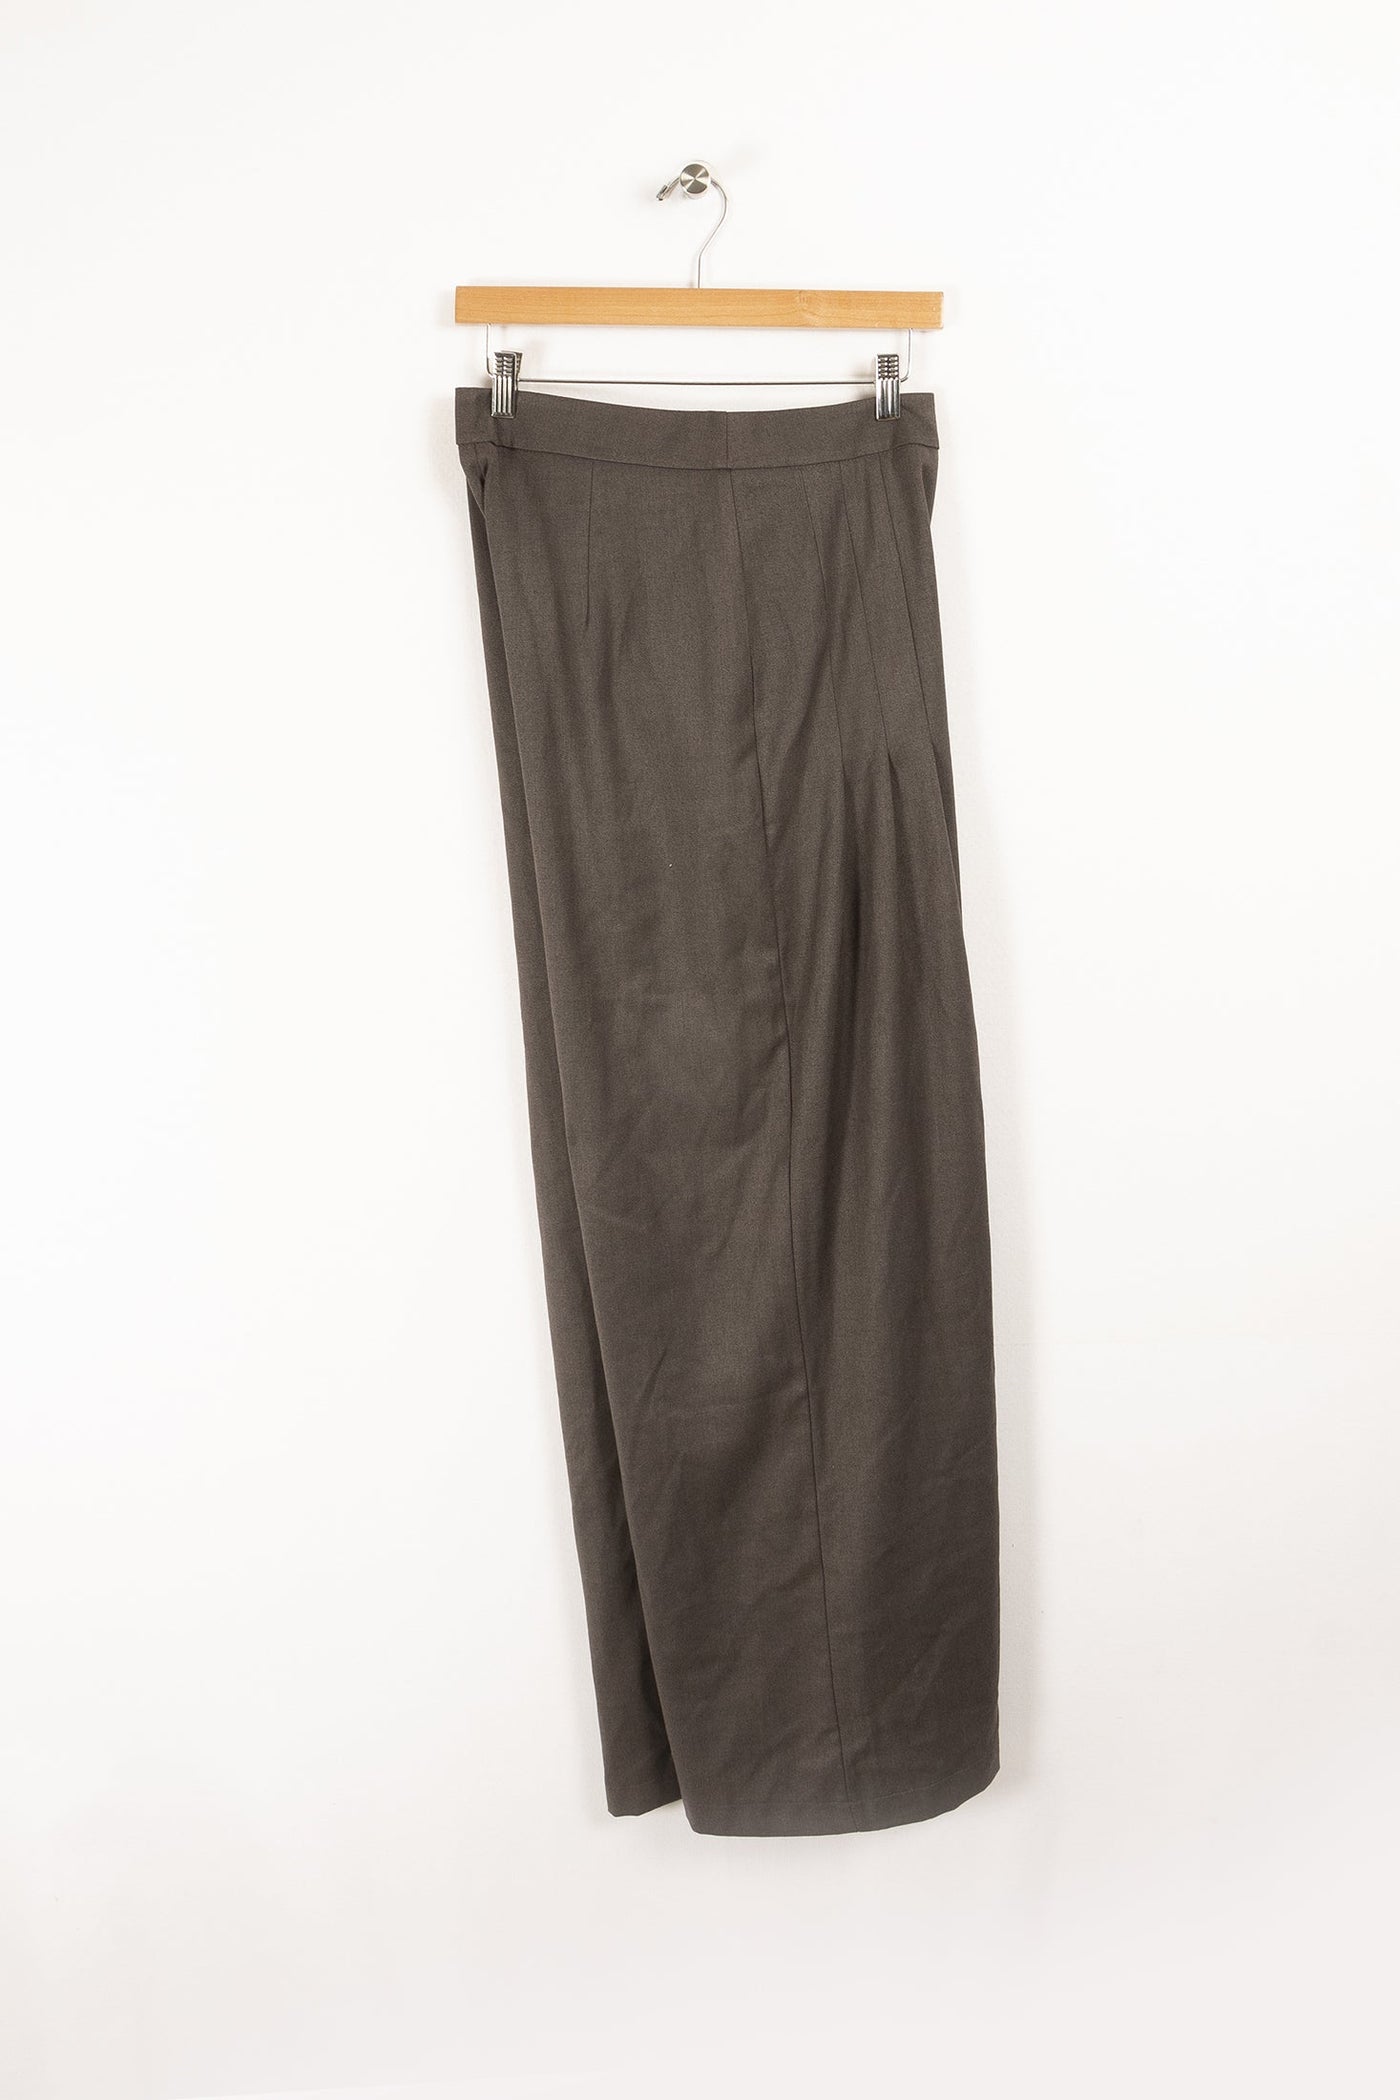 Pantalon - XL/42